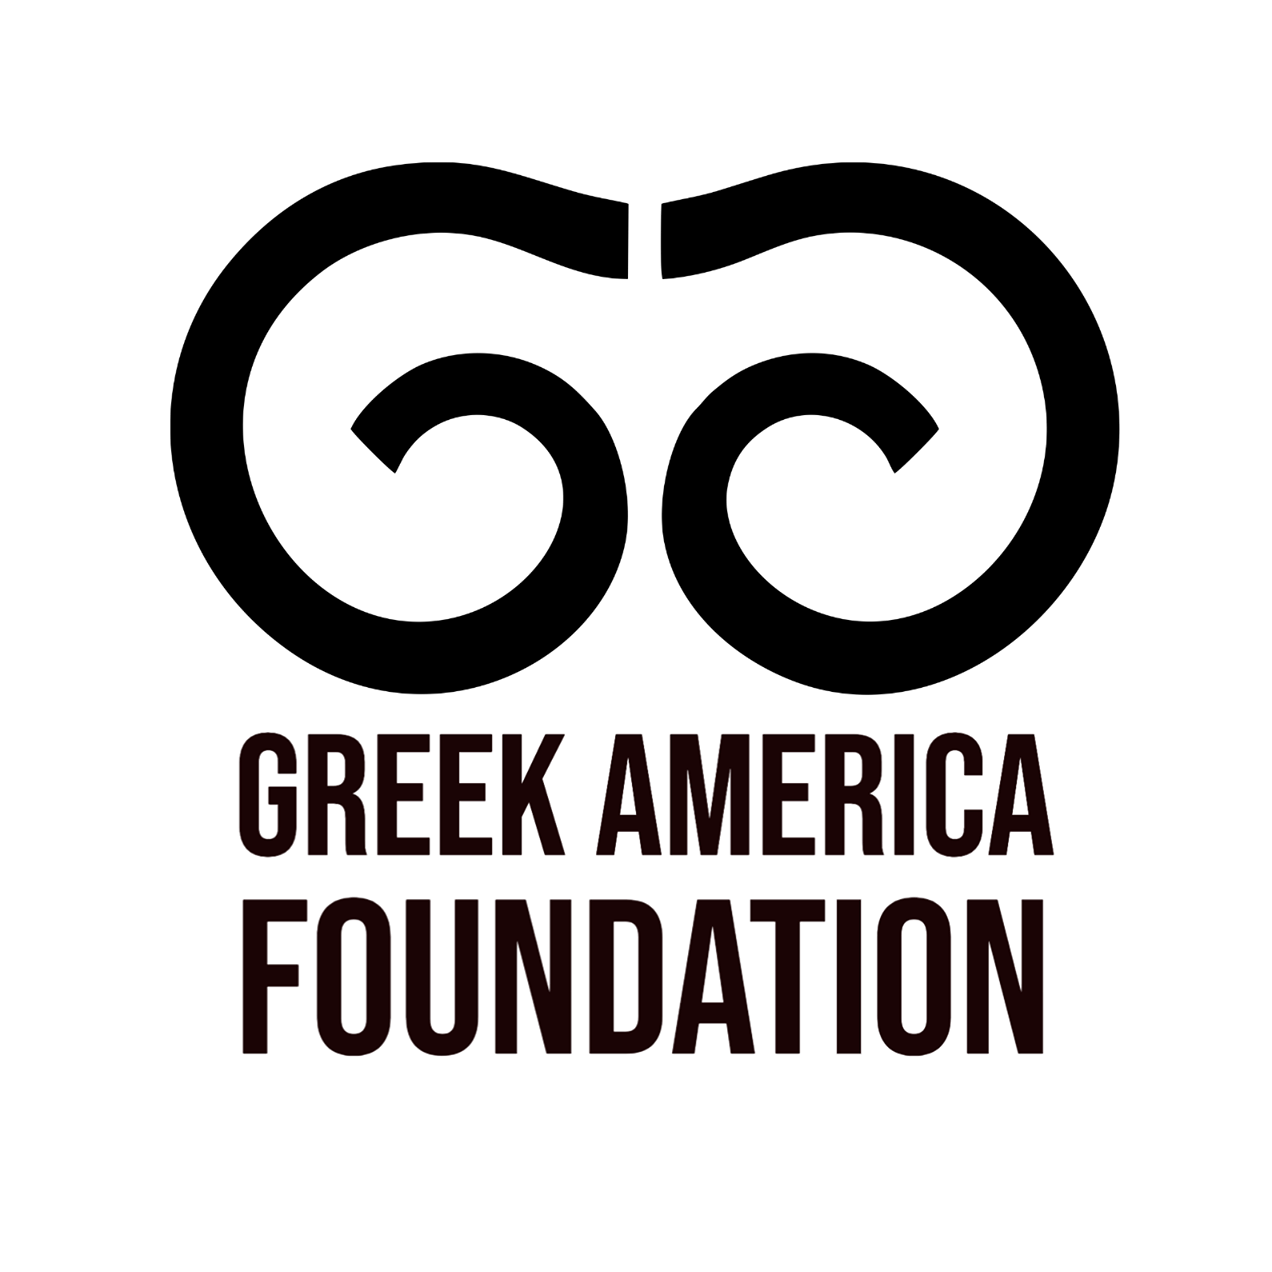 Greek Organizations in USA - Greek America Foundation